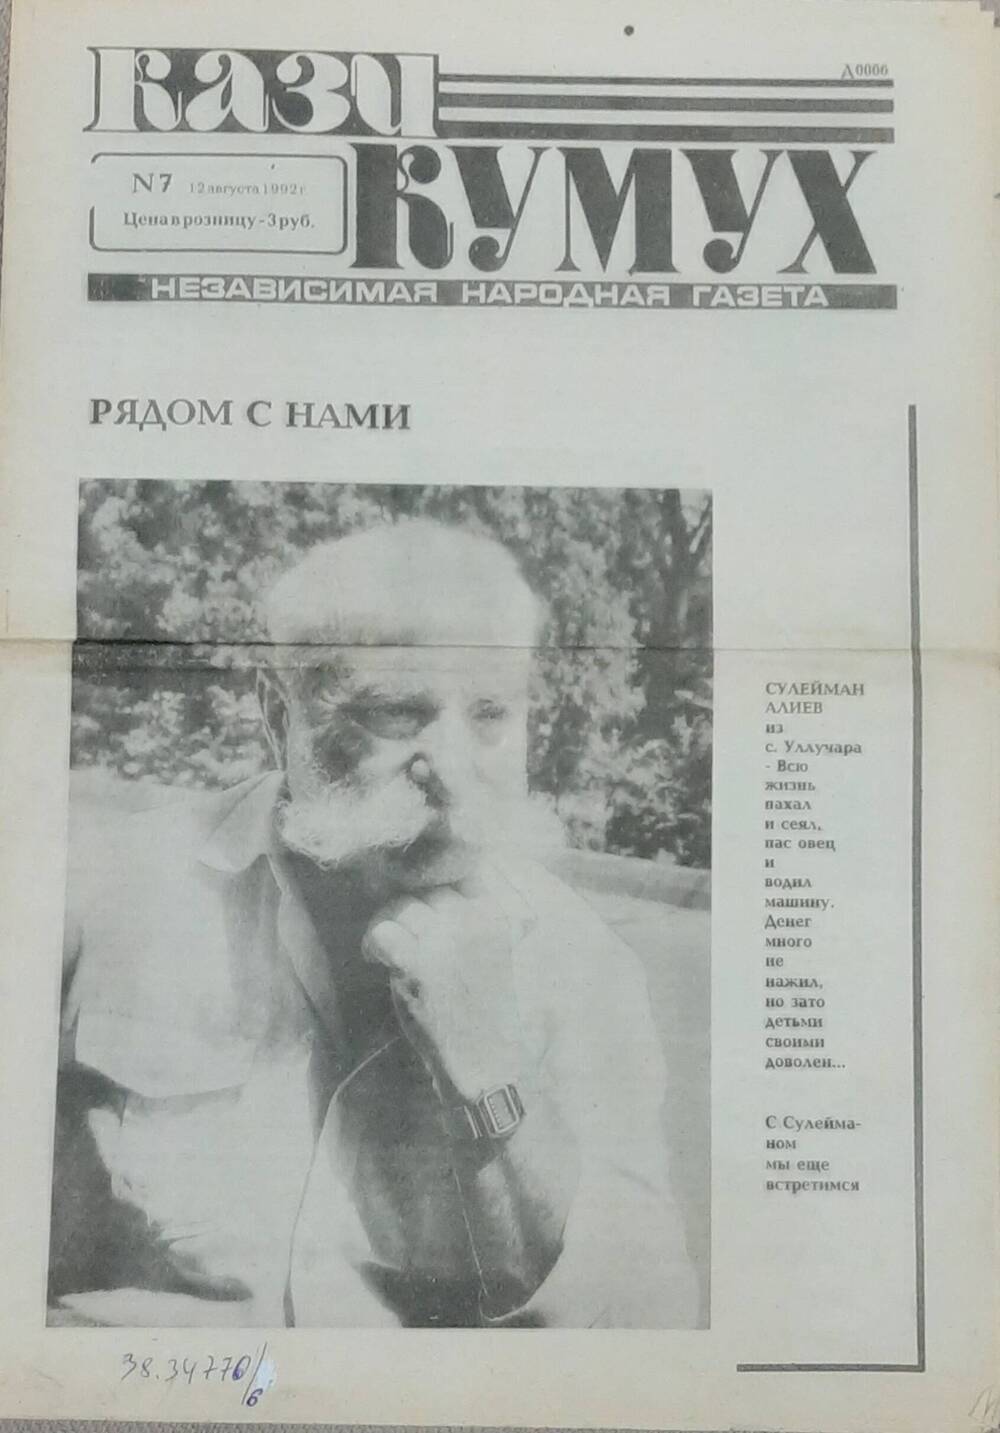 Газета  Кази-Кумух №7 от 12 августа 1992 г. . Содержит отрывок исследования арабских рукописей